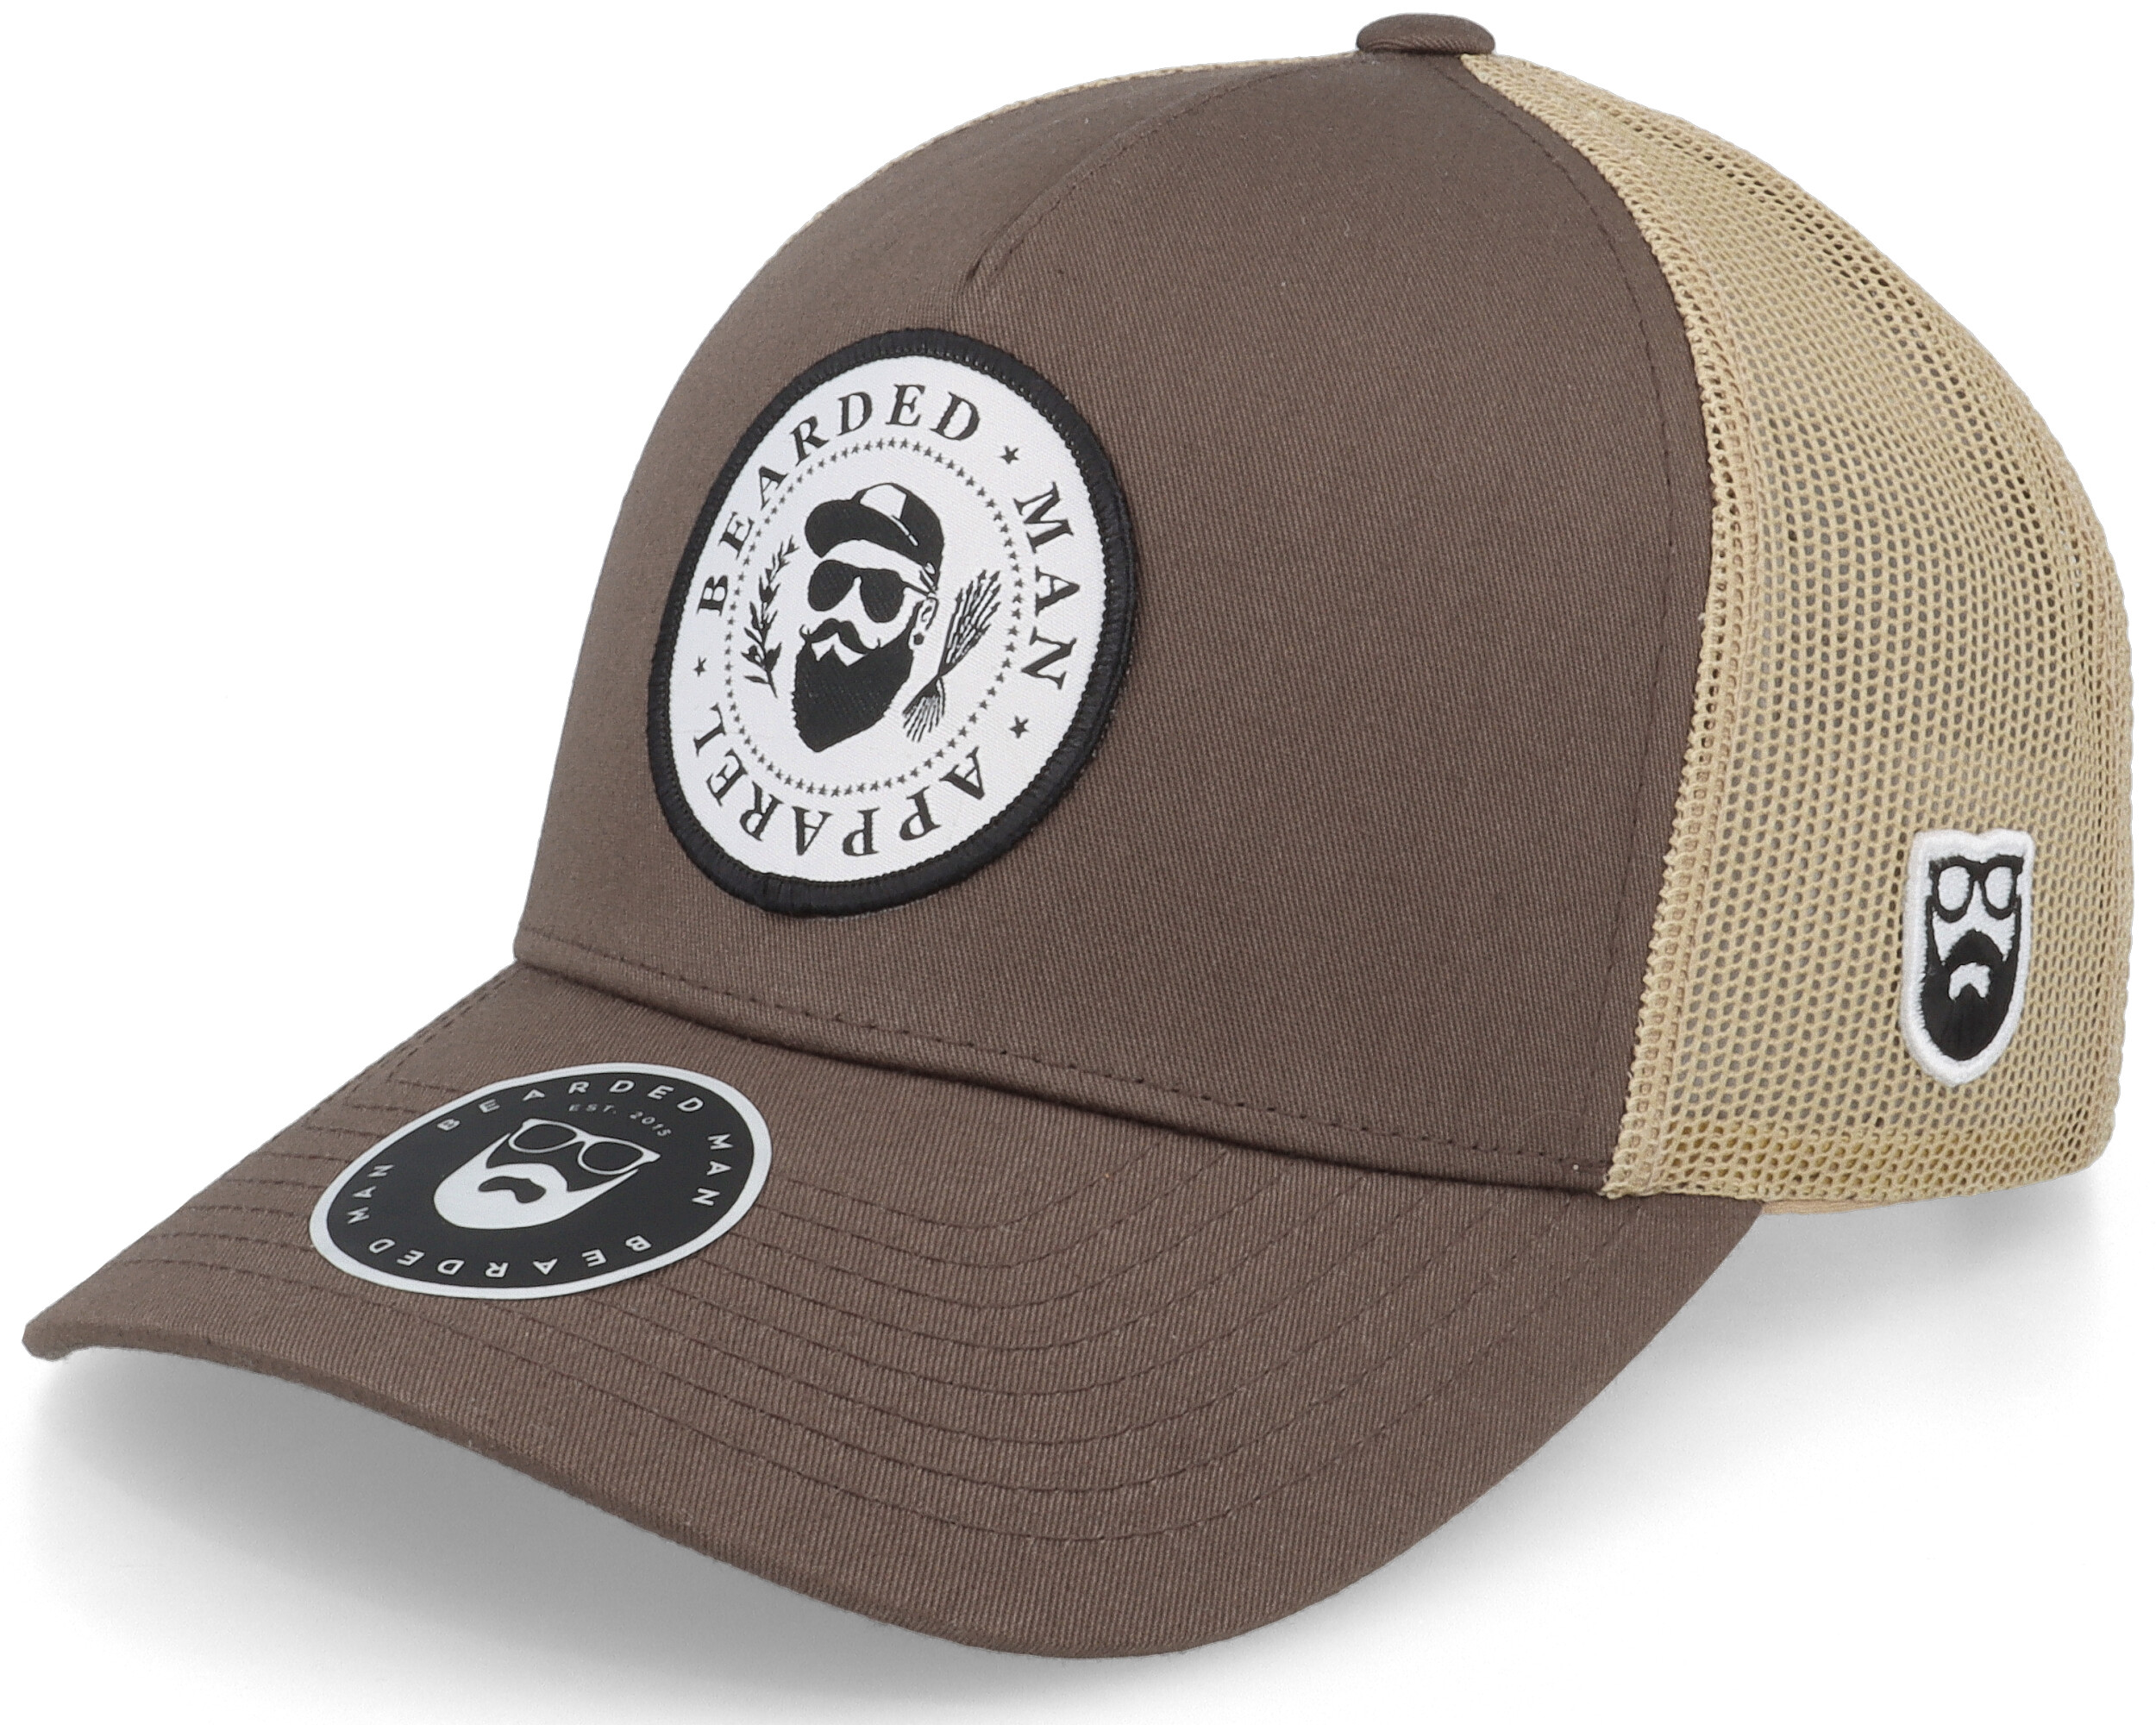 Beard Laws Trucker Hat 